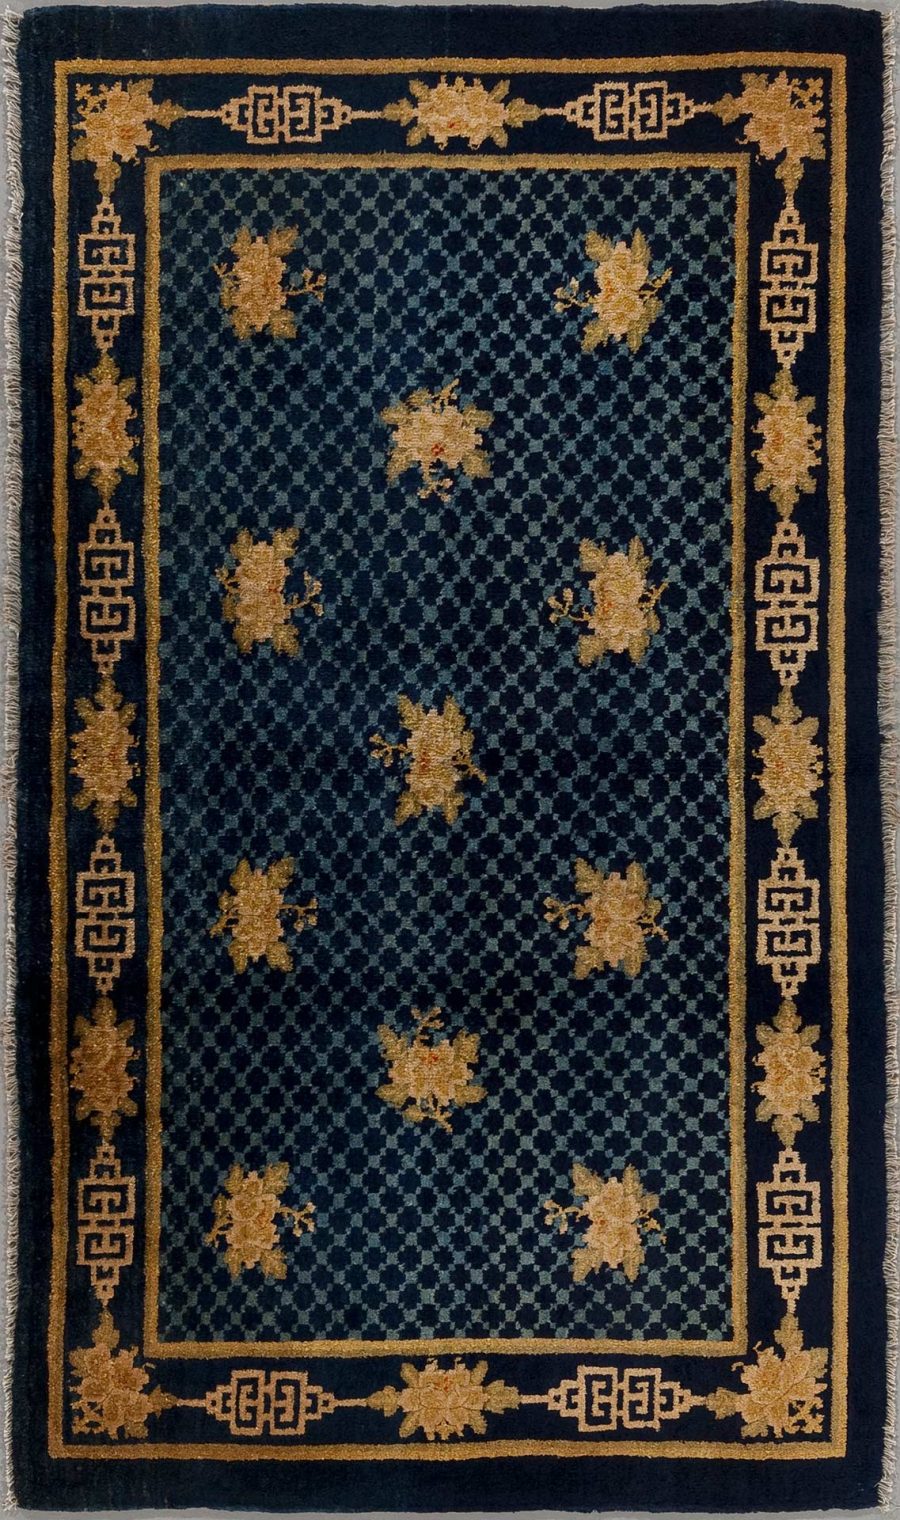 Traditioneller handgeknüpfter Teppich in Dunkelblau mit goldfarbenen Blumenmustern und geometrischem Randdesign auf schwarzem Hintergrund.